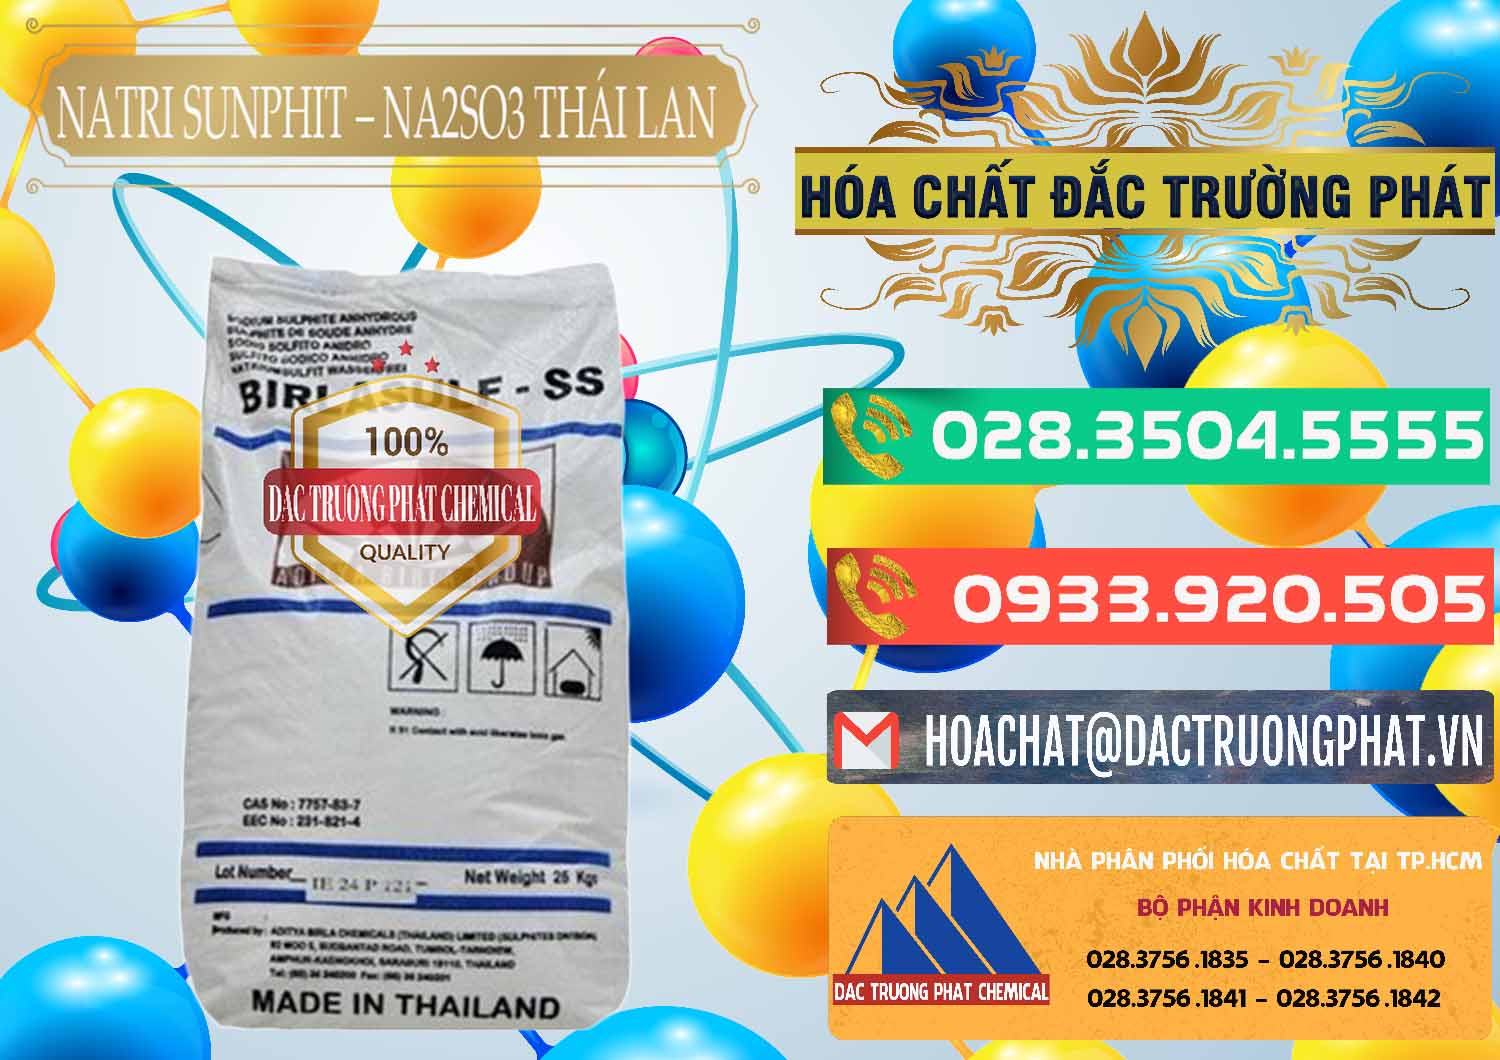 Nơi bán Natri Sunphit - NA2SO3 Thái Lan - 0105 - Cty chuyên cung cấp và bán hóa chất tại TP.HCM - congtyhoachat.com.vn